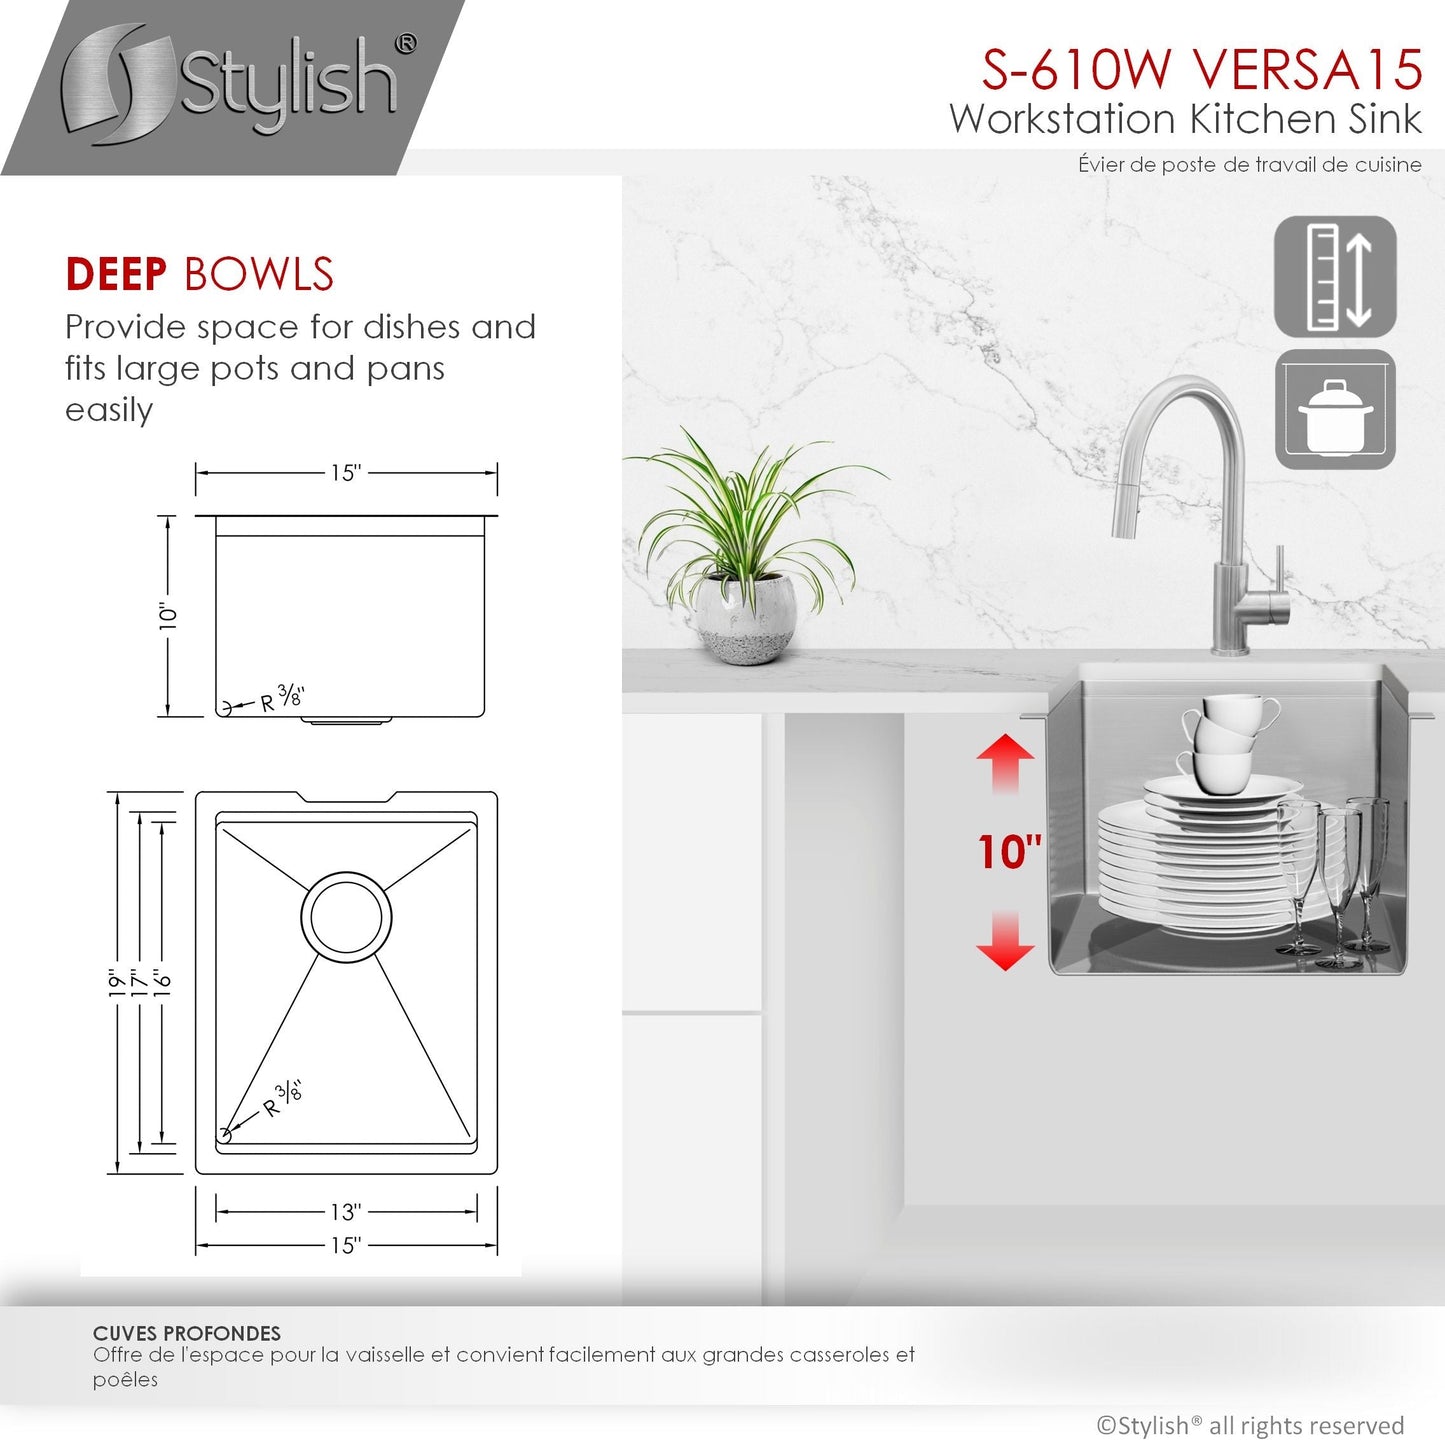 Stylish Versa15 15" x 19" Workstation Single Bowl Undermount 16 Gauge Stainless Steel Kitchen Sink with Built in Accessories S-610W